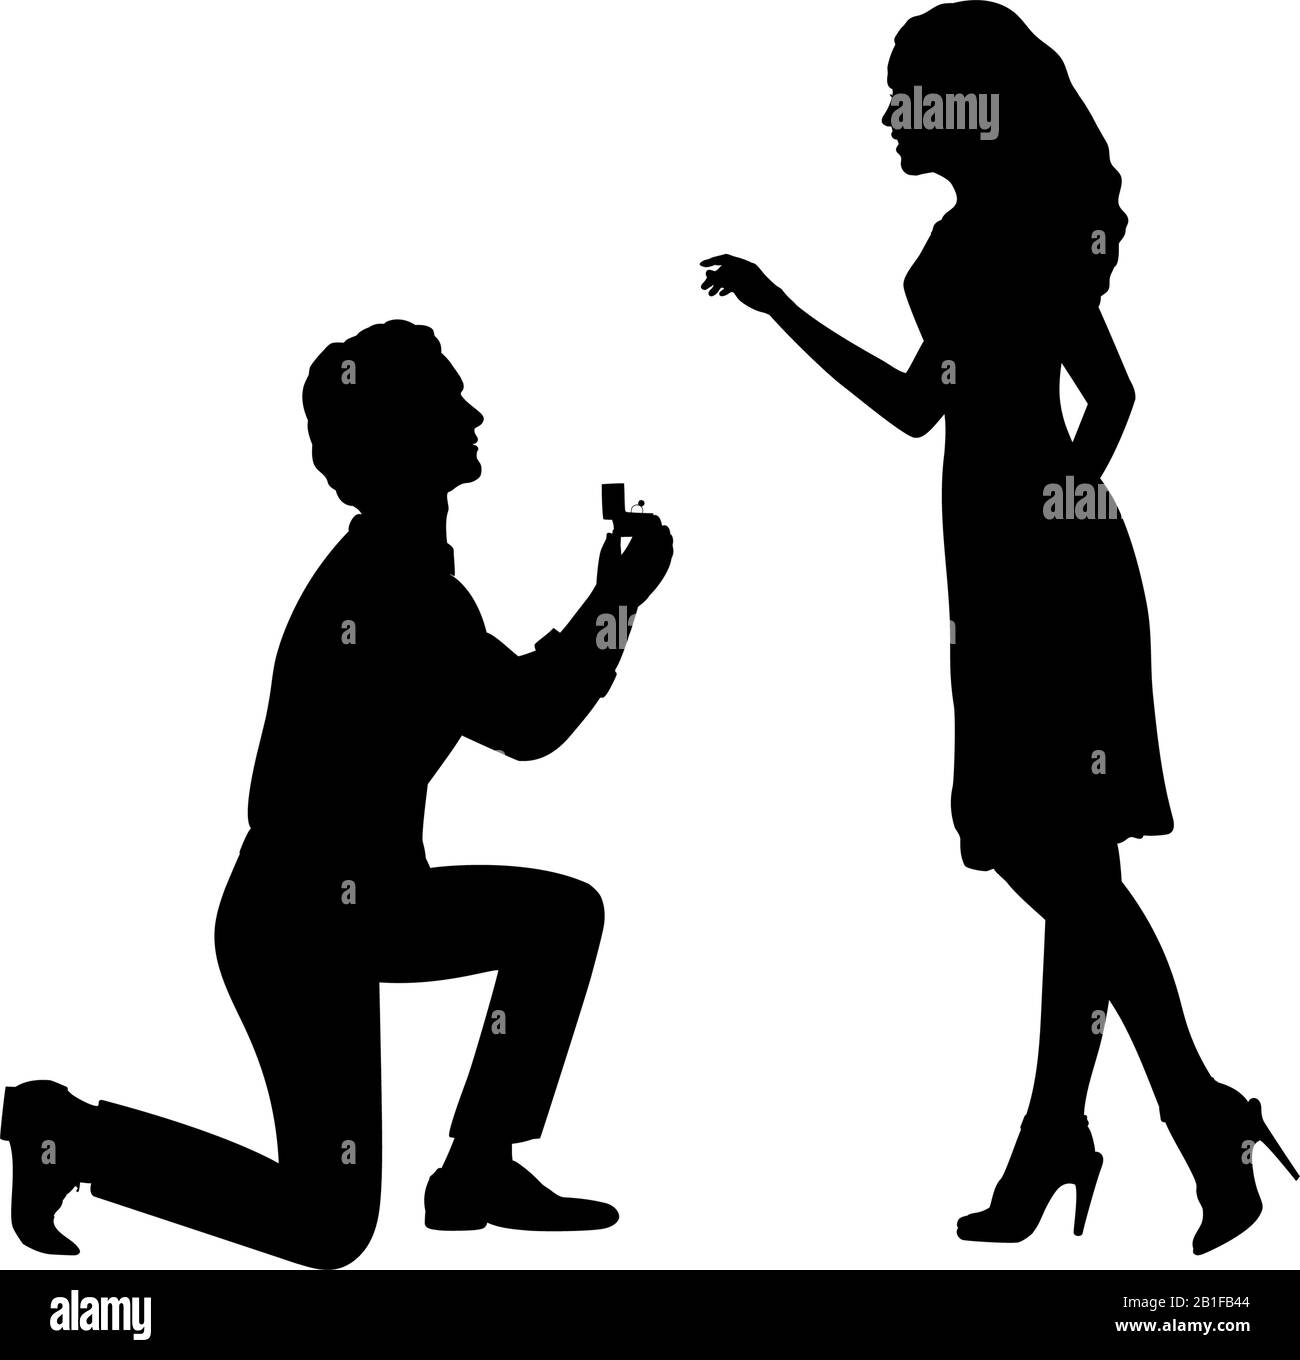 Silhouette eines Mannes, der auf dem Knie steht, macht ein Angebot, Frau zu heiraten. Symbol für Vektorgrafiken Stock Vektor